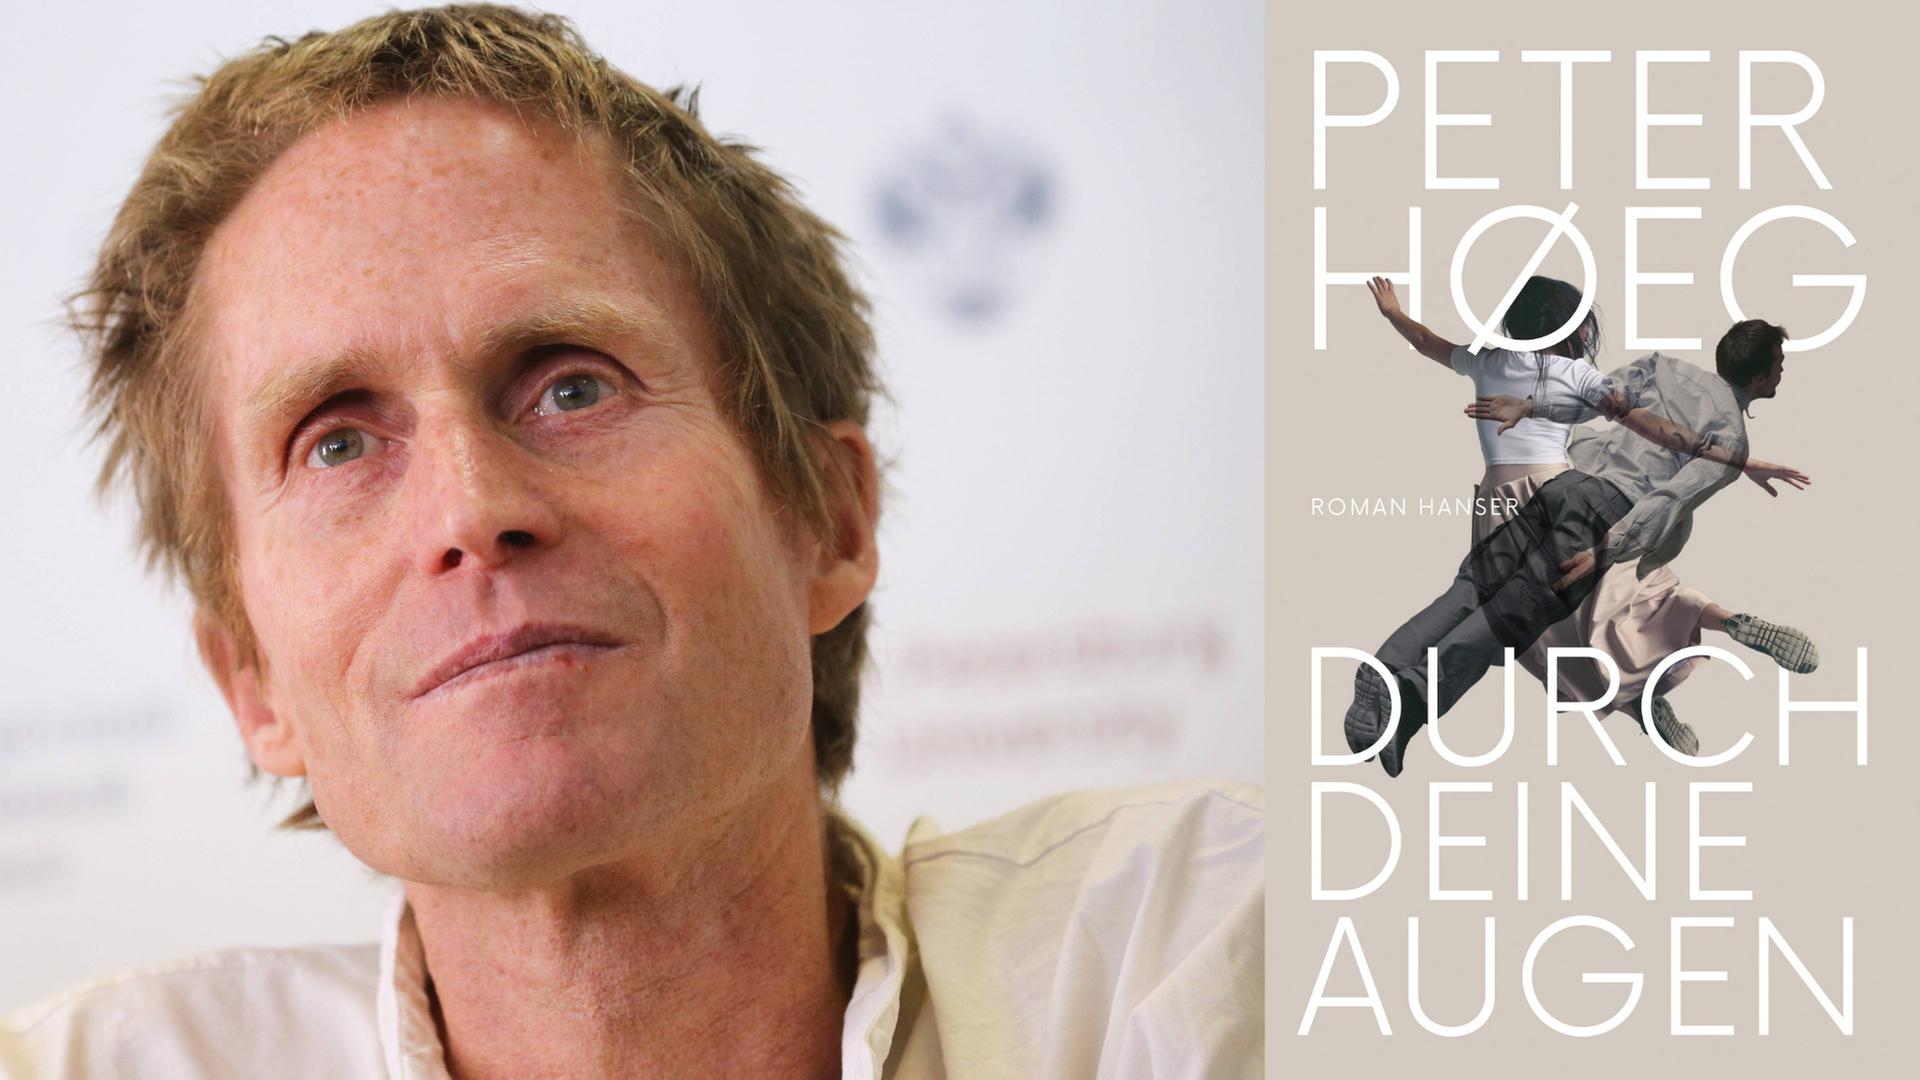 Peter Høeg und sein neues Buch "Durch Deine Augen". Zu sehen ist ein Portrait des Autors und das Buchcover